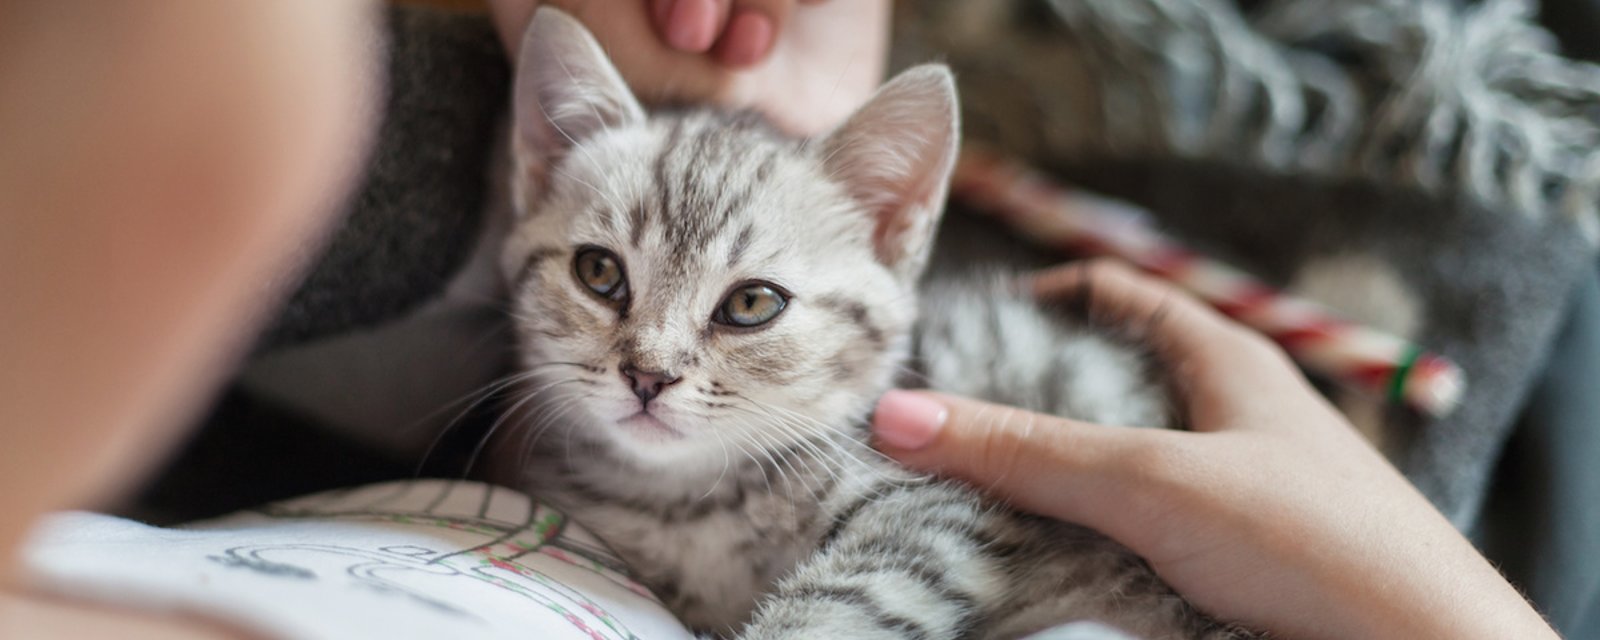 La science démontre que les chats s'attachent à leur maître comme un bébé à ses parents